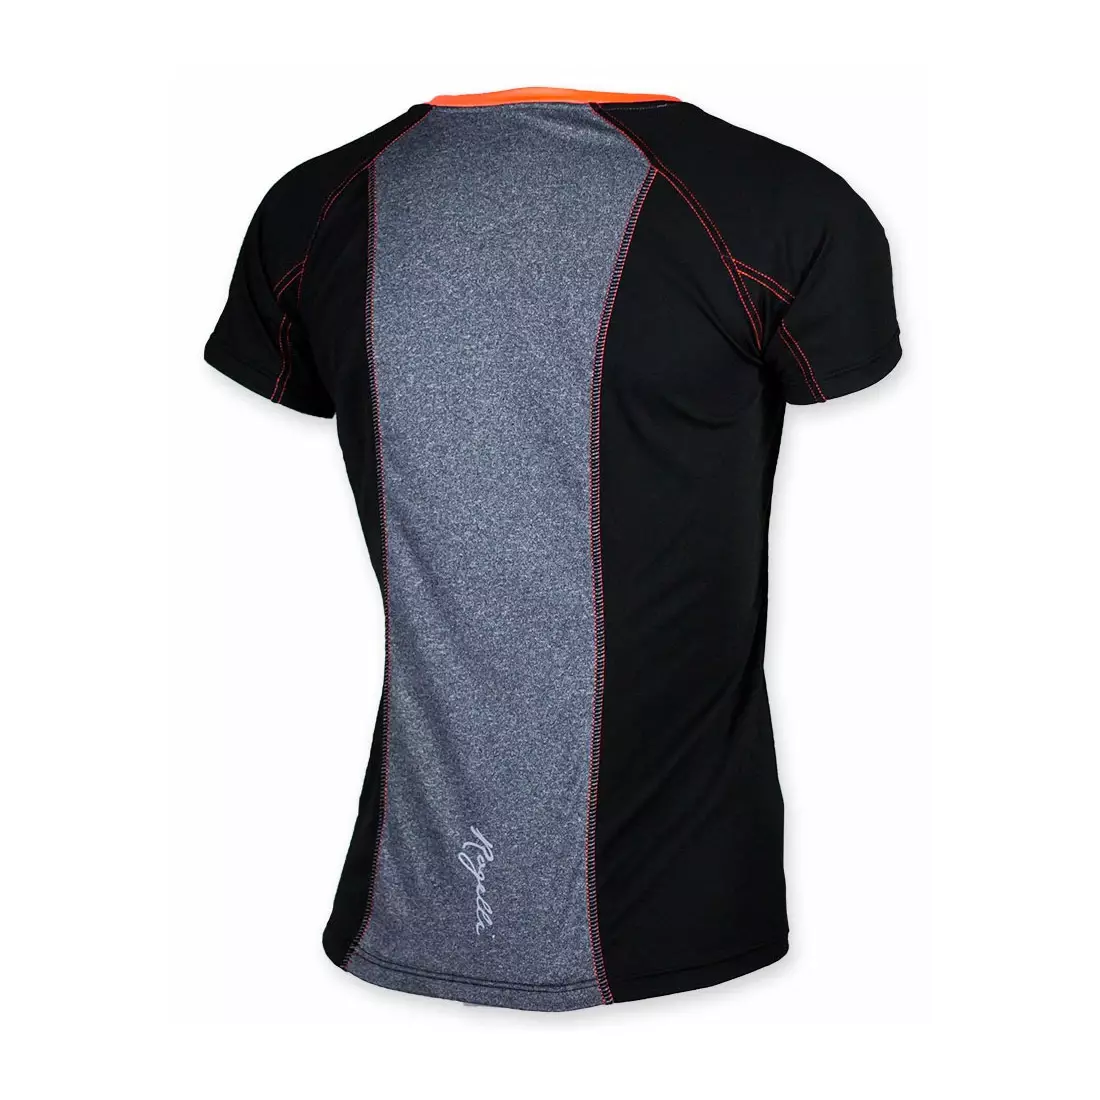 ROGELLI MAURIZIA - dámské tričko K/R 840.260, černo-růžové (korálové)